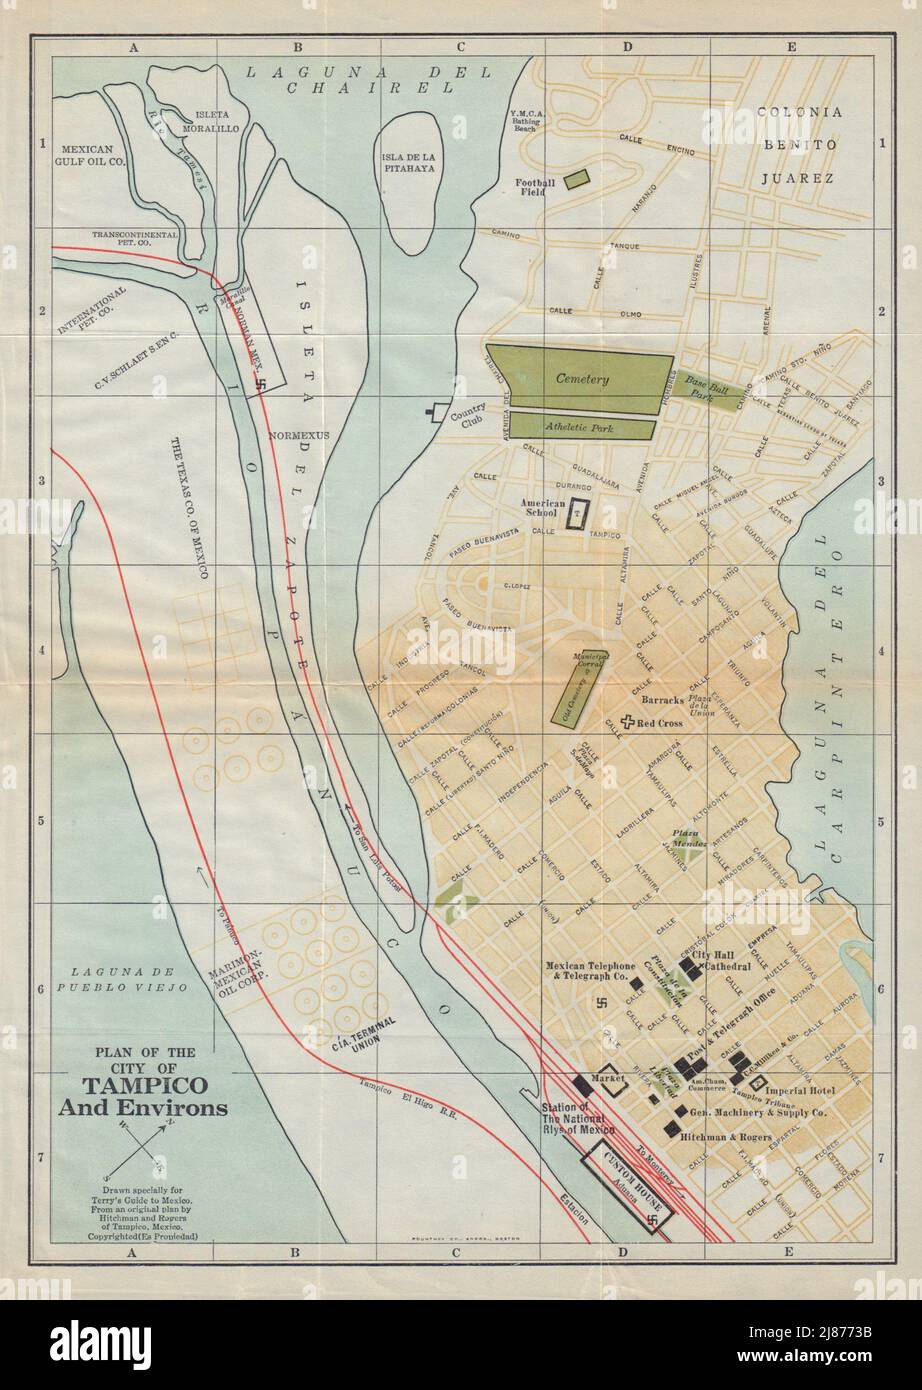 Plan of the city of TAMPICO, Mexico. Mapa de la ciudad. Town plan 1938 old Stock Photo